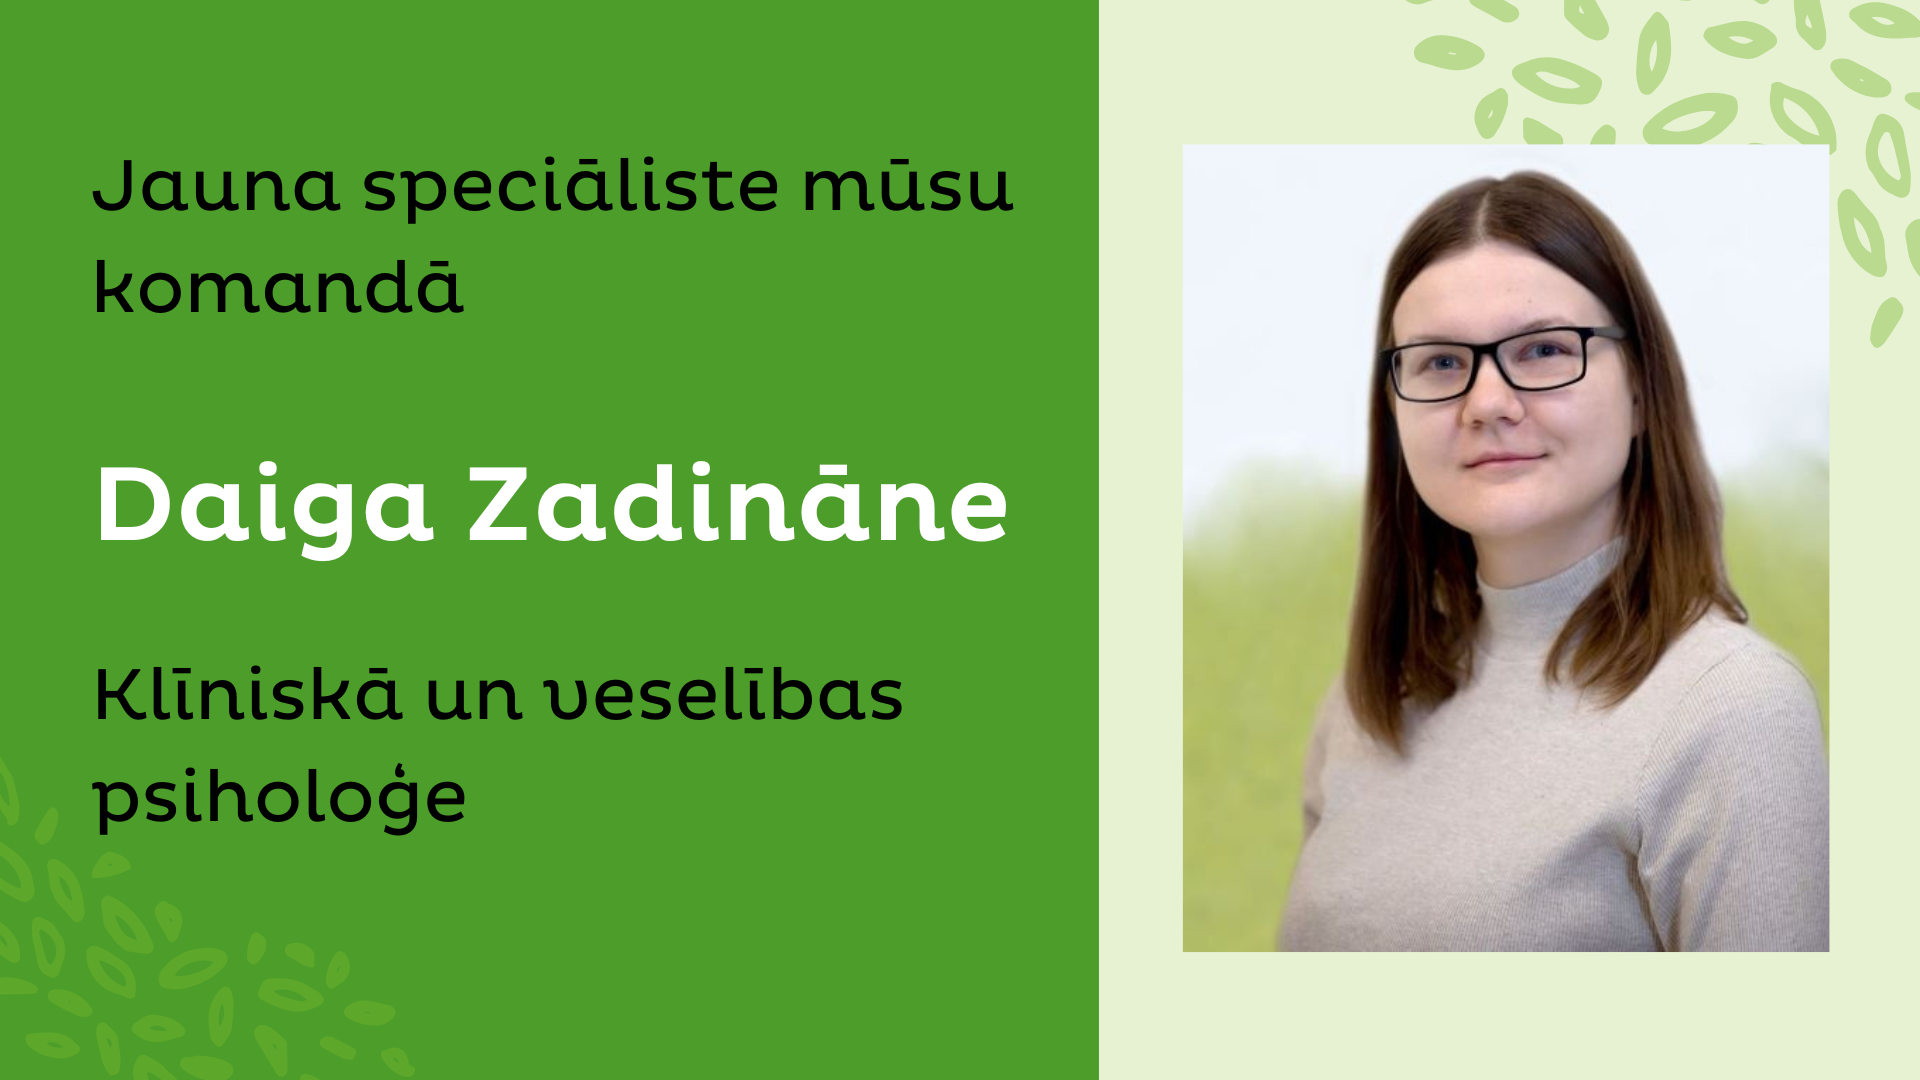 Zadināne_jaunums.png